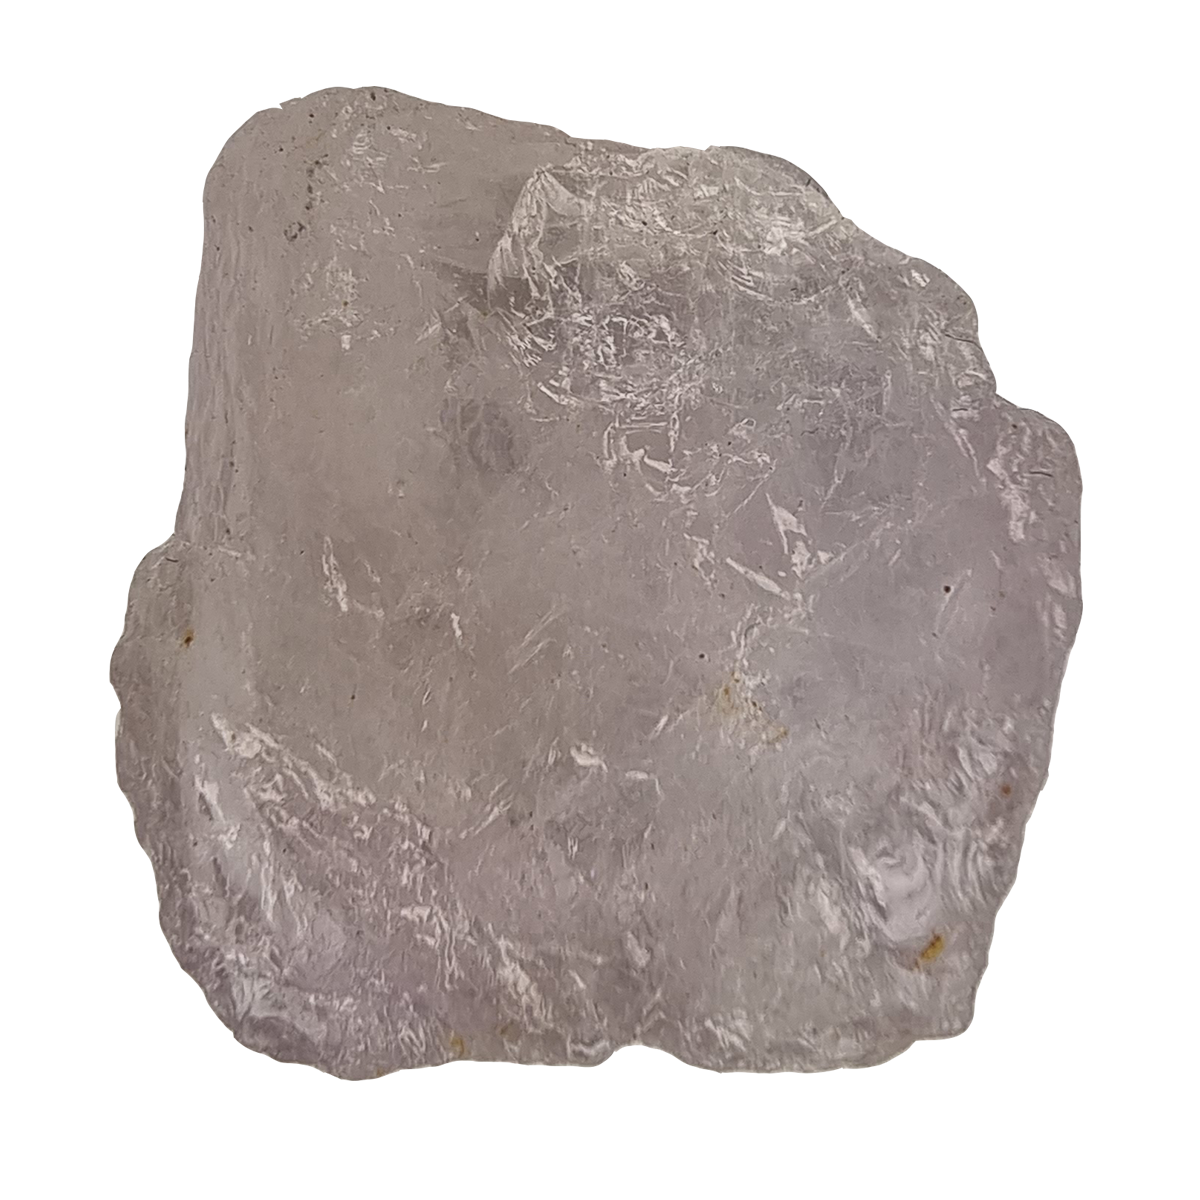 quartz-rose-brut